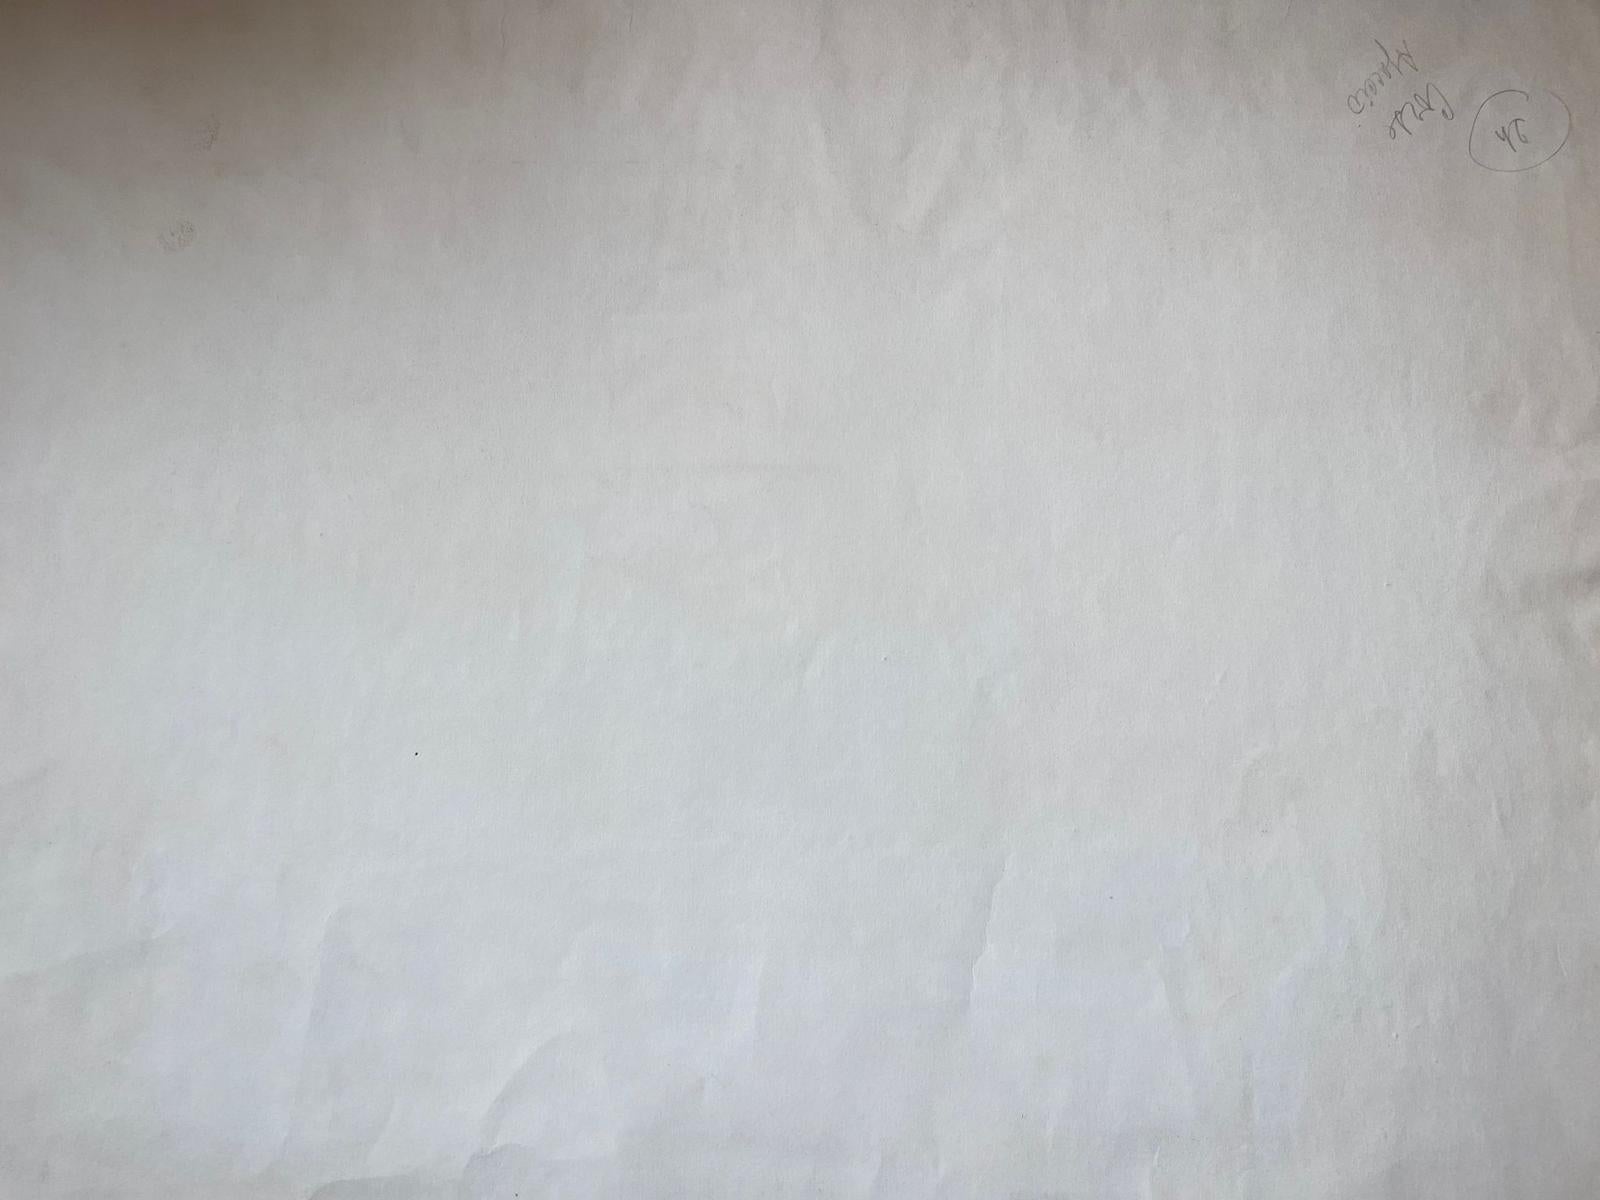 Jean La Forgue (Französisch 1901-1975) Aquarell auf Papier, ungerahmt
Gemälde: 17,75 x 25 Zoll
Herkunft: Nachlass des Künstlers, Frankreich
Zustand: sehr guter und gesunder Zustand; es gibt kleinere altersbedingte Spuren und Flecken auf der